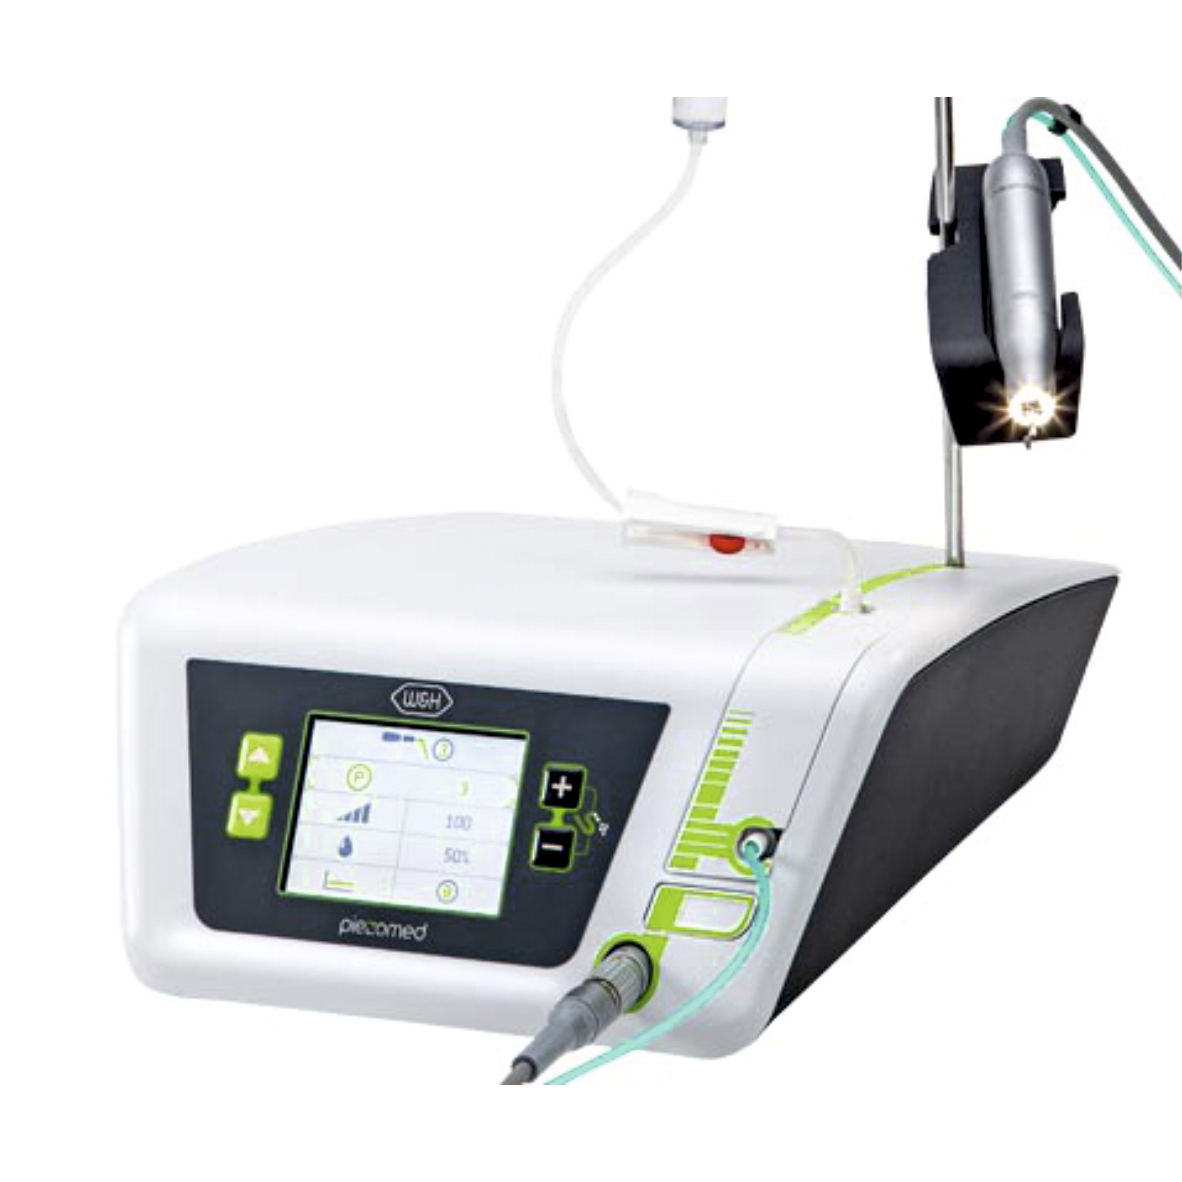 Piezomed SA-320 - пьезохирургический аппарат для хирургии и имплантологии с подсветкой